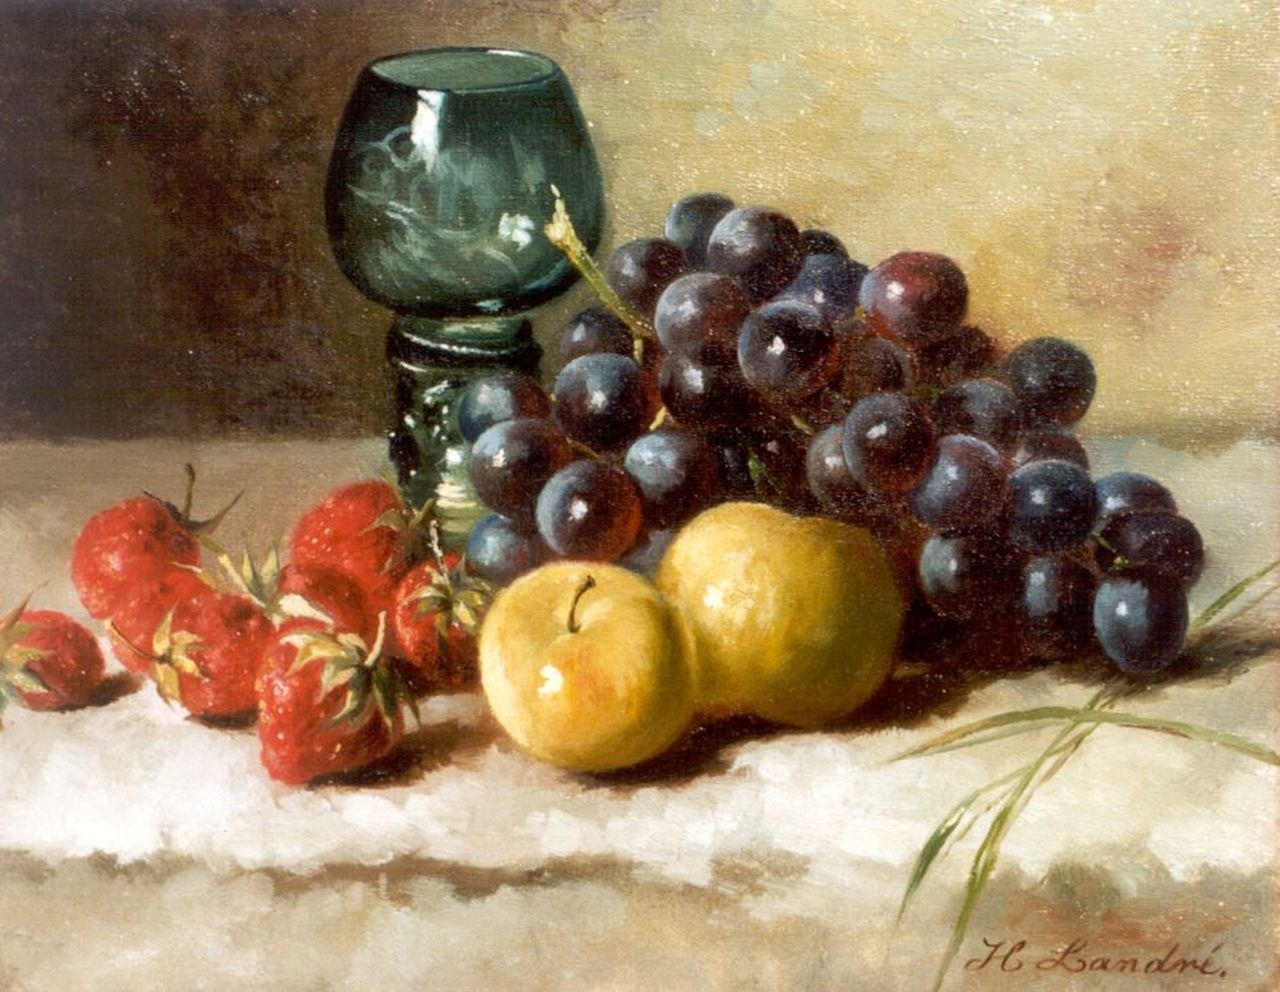 Landré-van der Kellen H.W.  | Hendrika Wilhelmina Landré-van der Kellen, Stilleven met druiven, aardbeien en wijnroemer, olieverf op doek 25,0 x 31,0 cm, gesigneerd rechtsonder